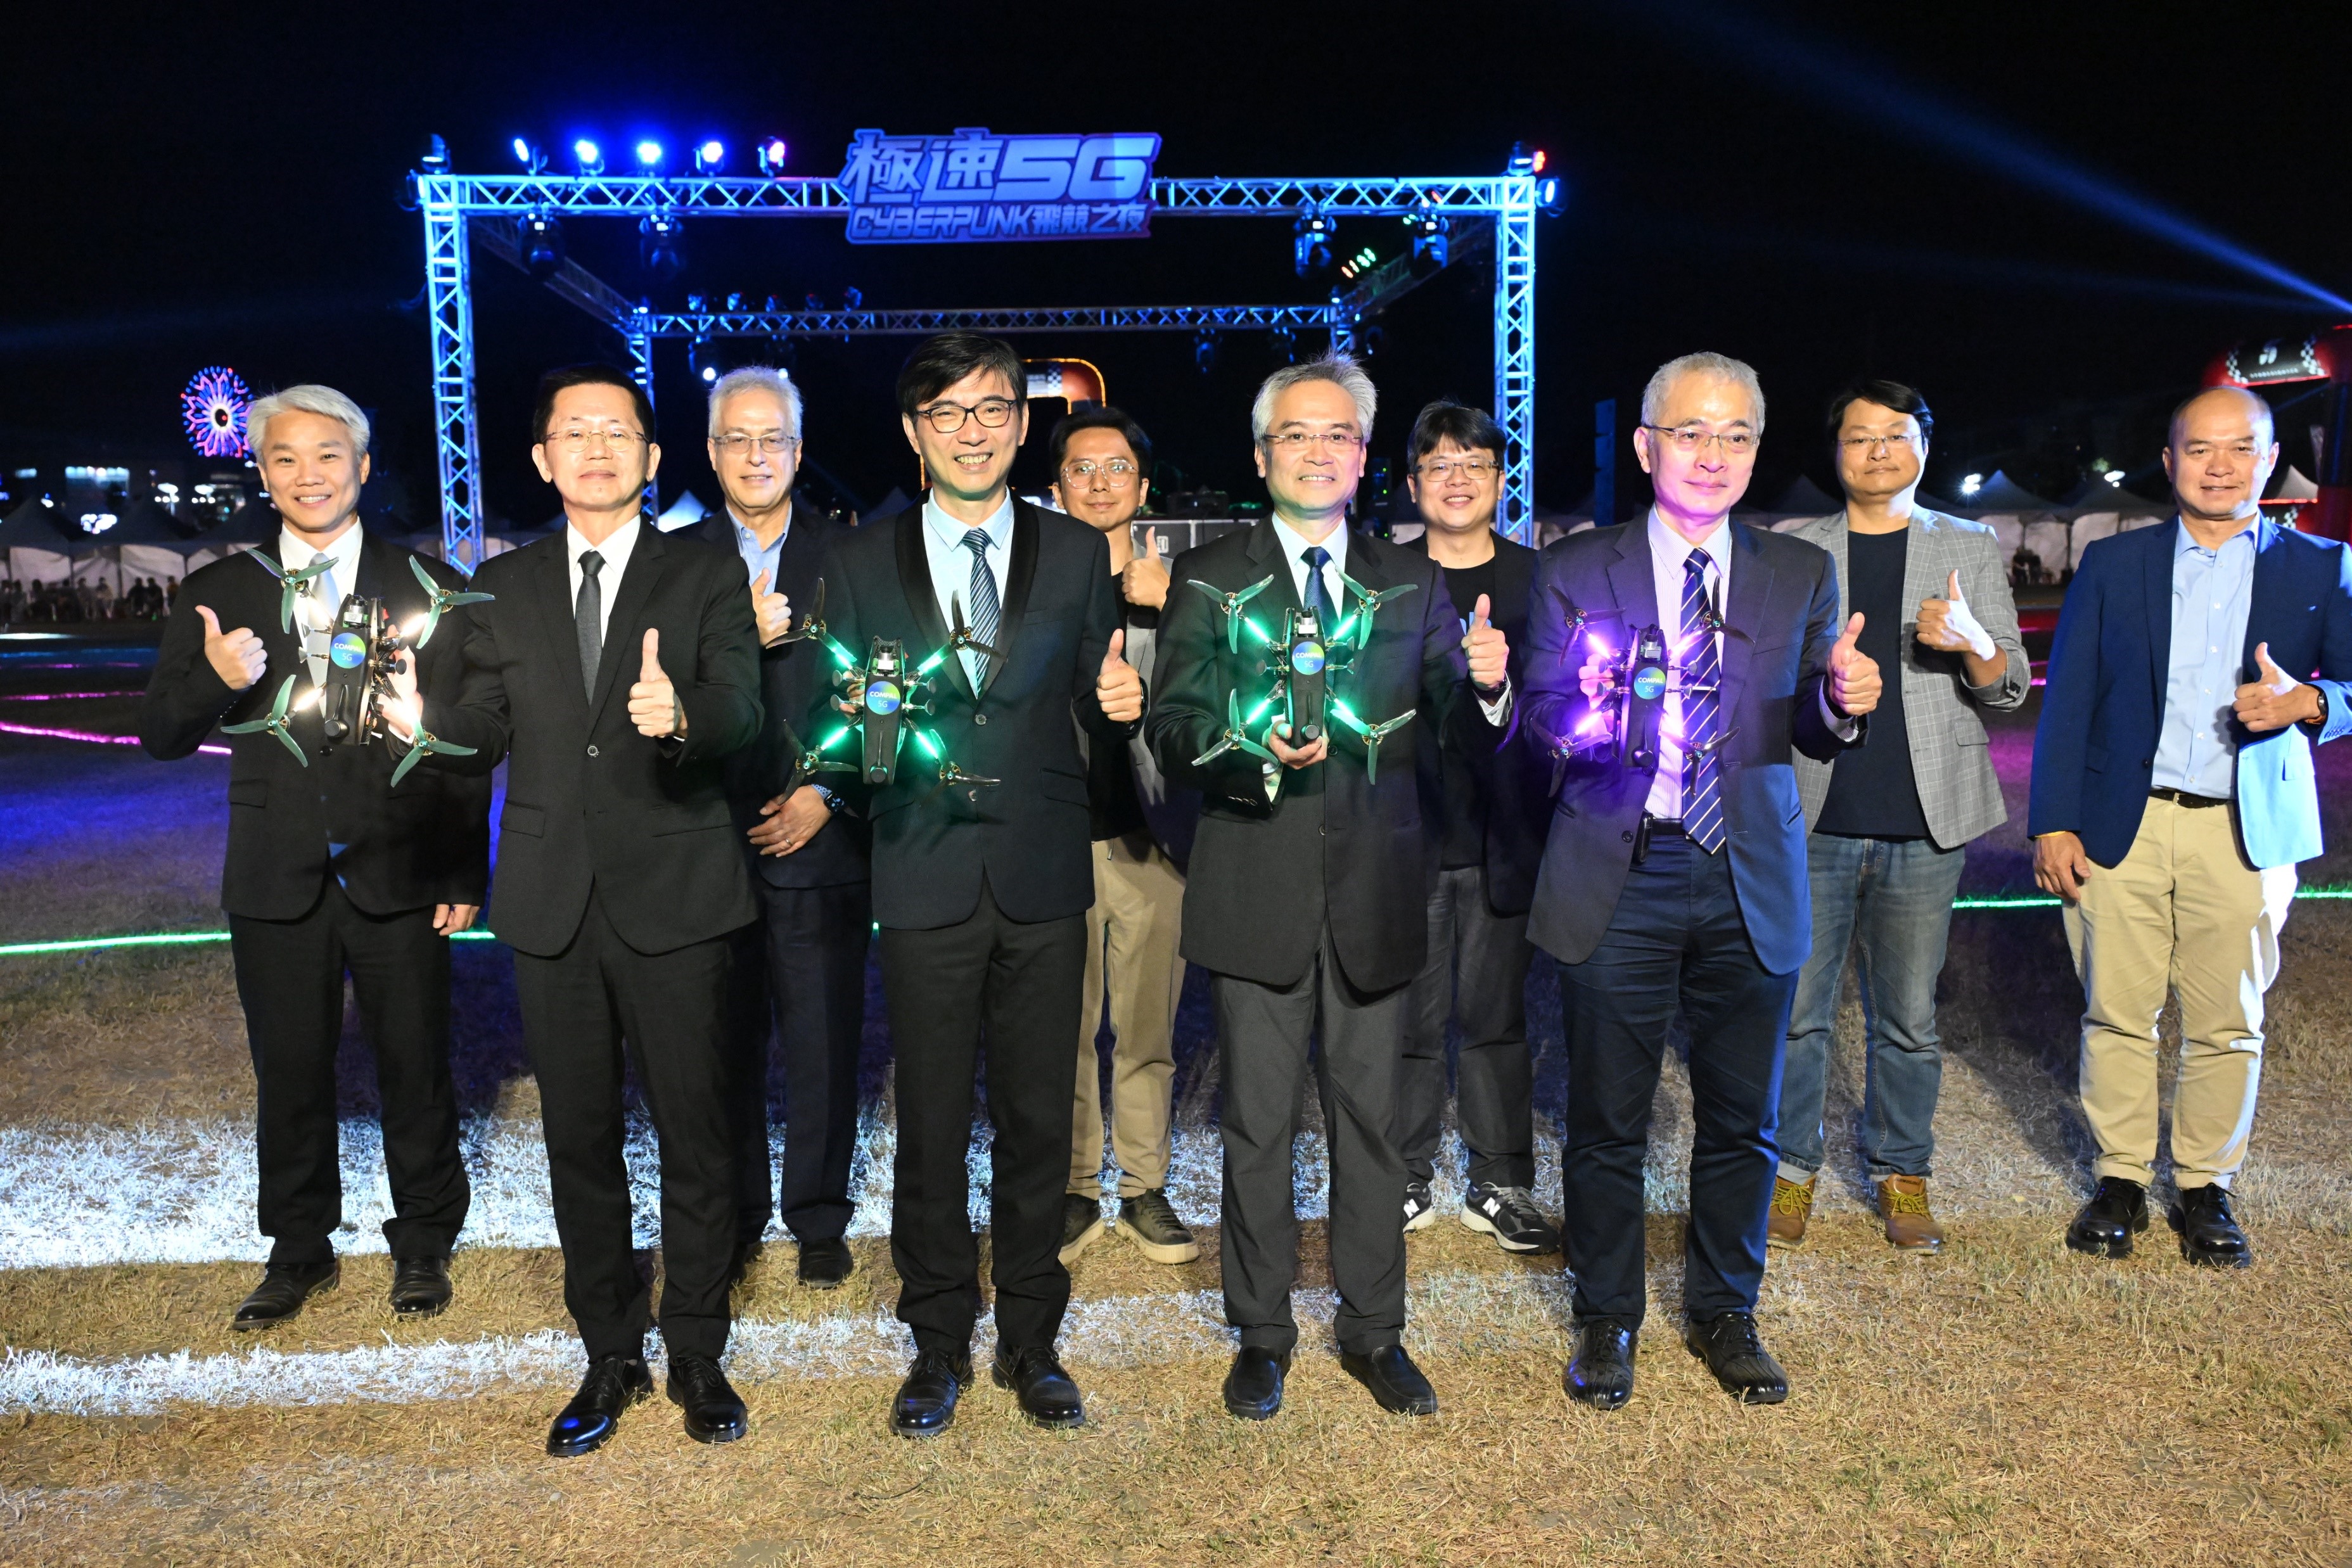 經濟部攜手仁寶舉辦國際無人機競速大賽 首創5G雙頻專網系統  影像傳輸速度全球最快